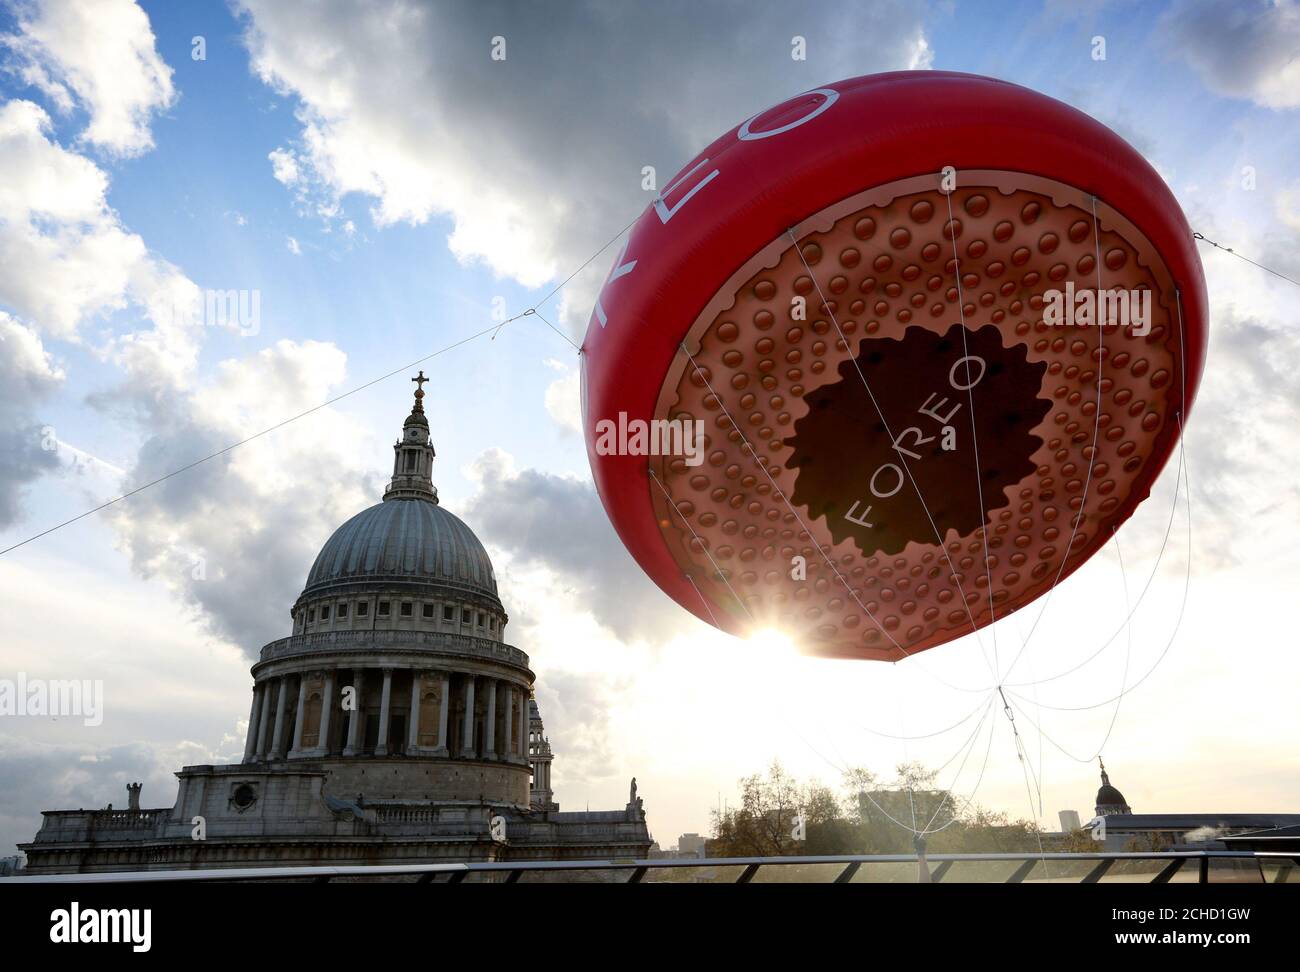 Une version gonflable de 5 mètres du nouvel OVNI FOREO, le premier masque intelligent au monde apparaît à St Paul's à Londres pour célébrer aujourd'hui la Journée nationale des étrangers. Banque D'Images